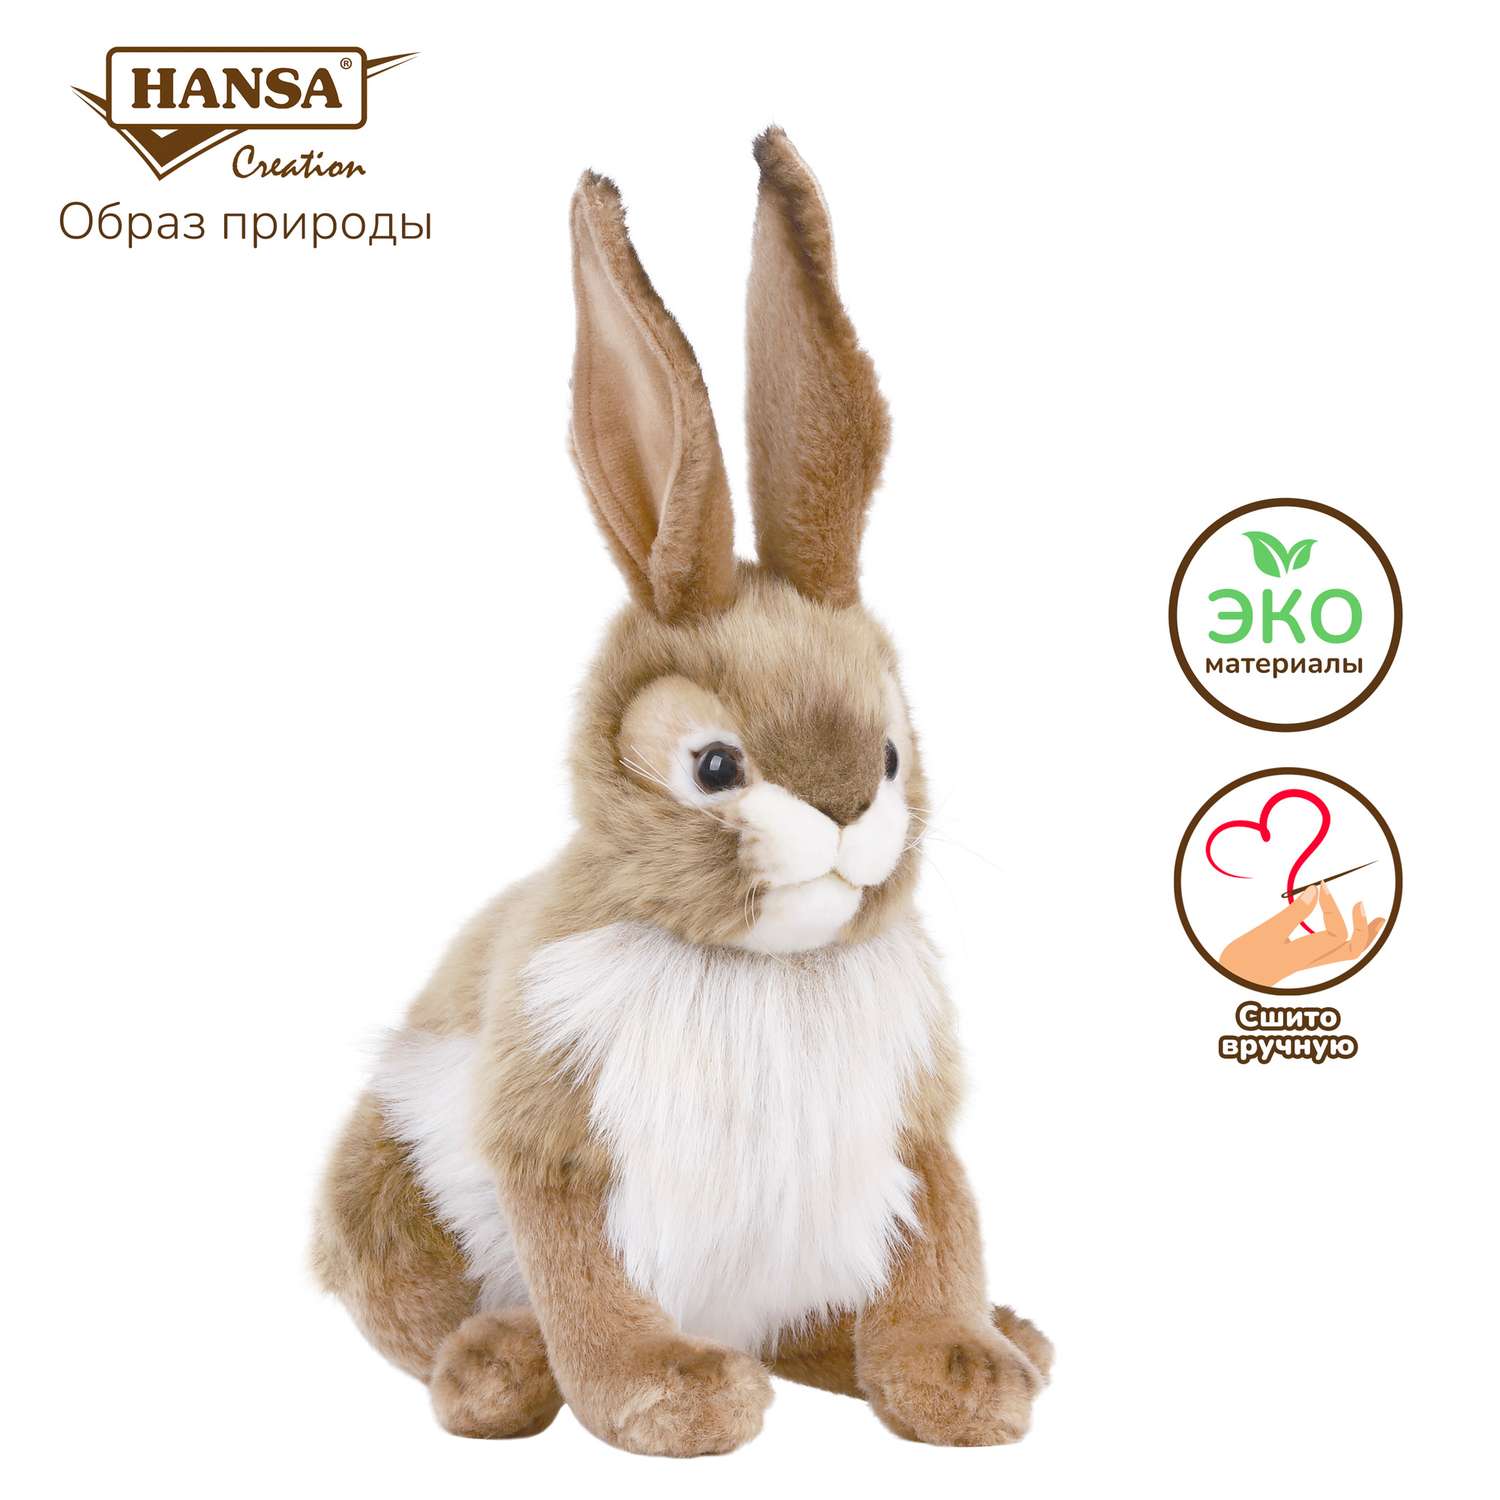 Реалистичная мягкая игрушка Hansa Чернохвостый заяц 30 см - фото 1